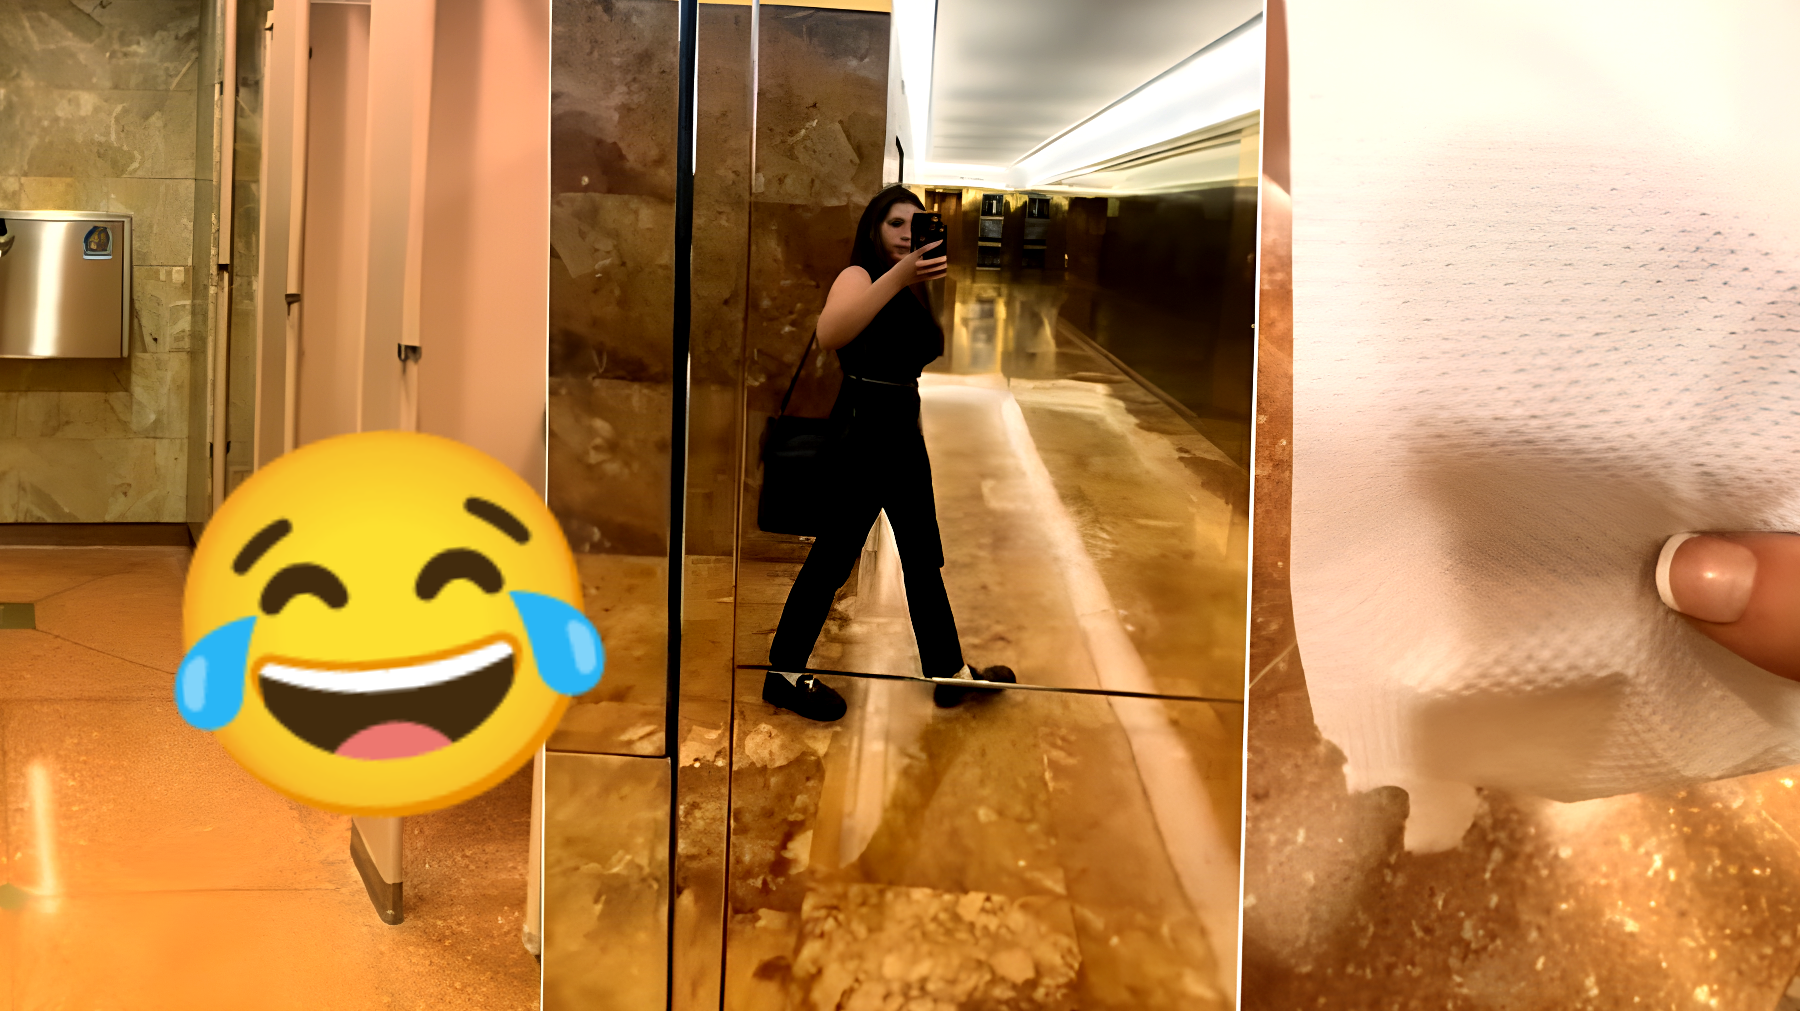 Uno sguardo all'interno del bagno segreto della Trump Tower: la recensione di un tiktoker ti farà morire dal ridere